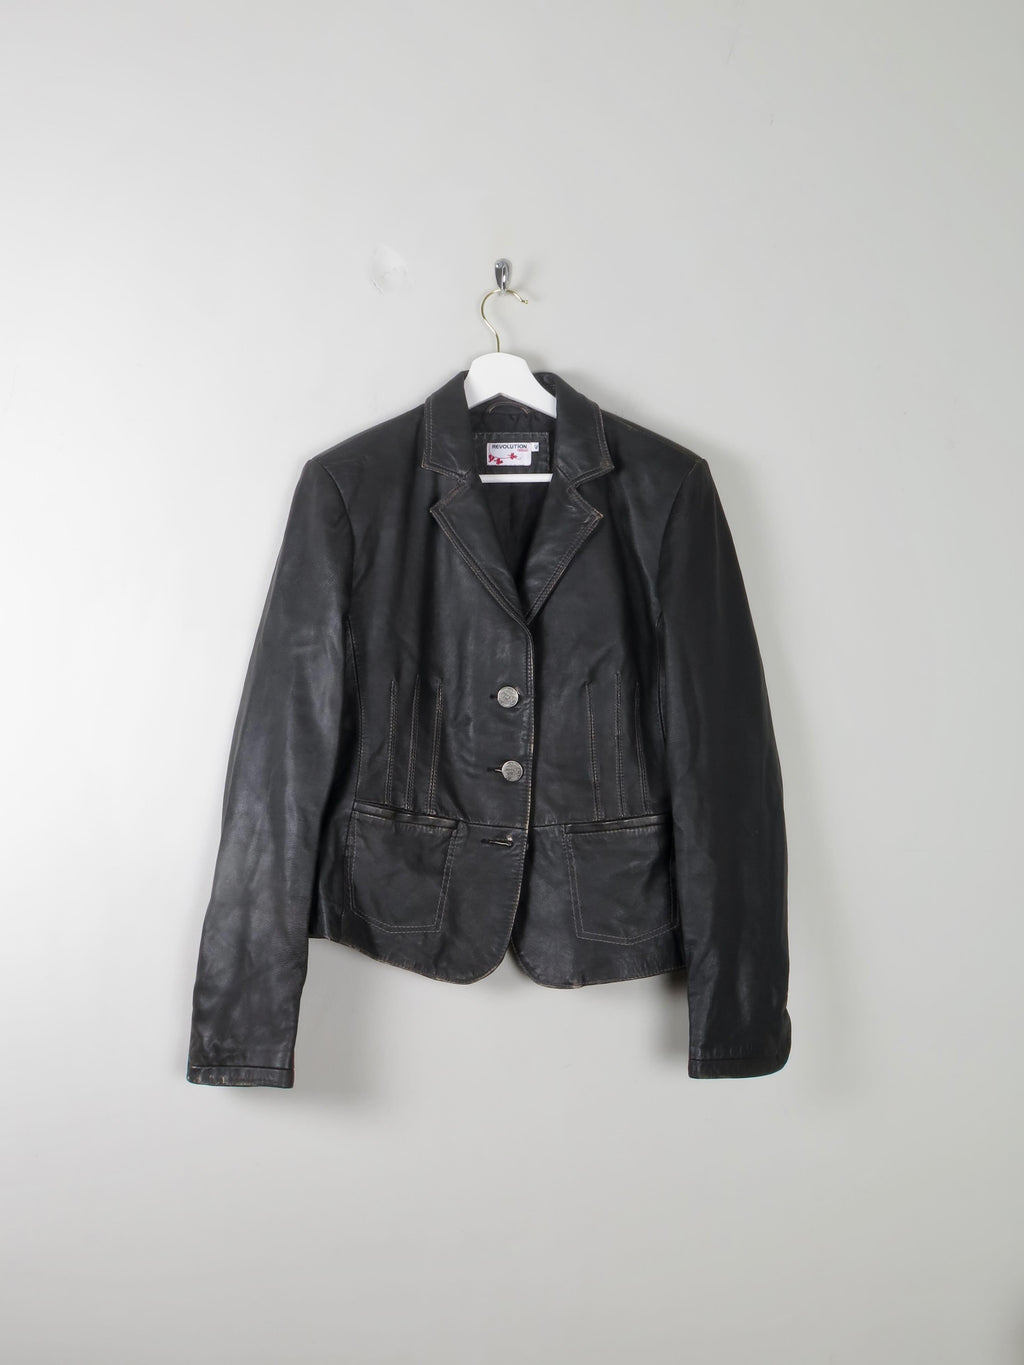 Women's Vintage Black Leather Jacket M - The Harlequin